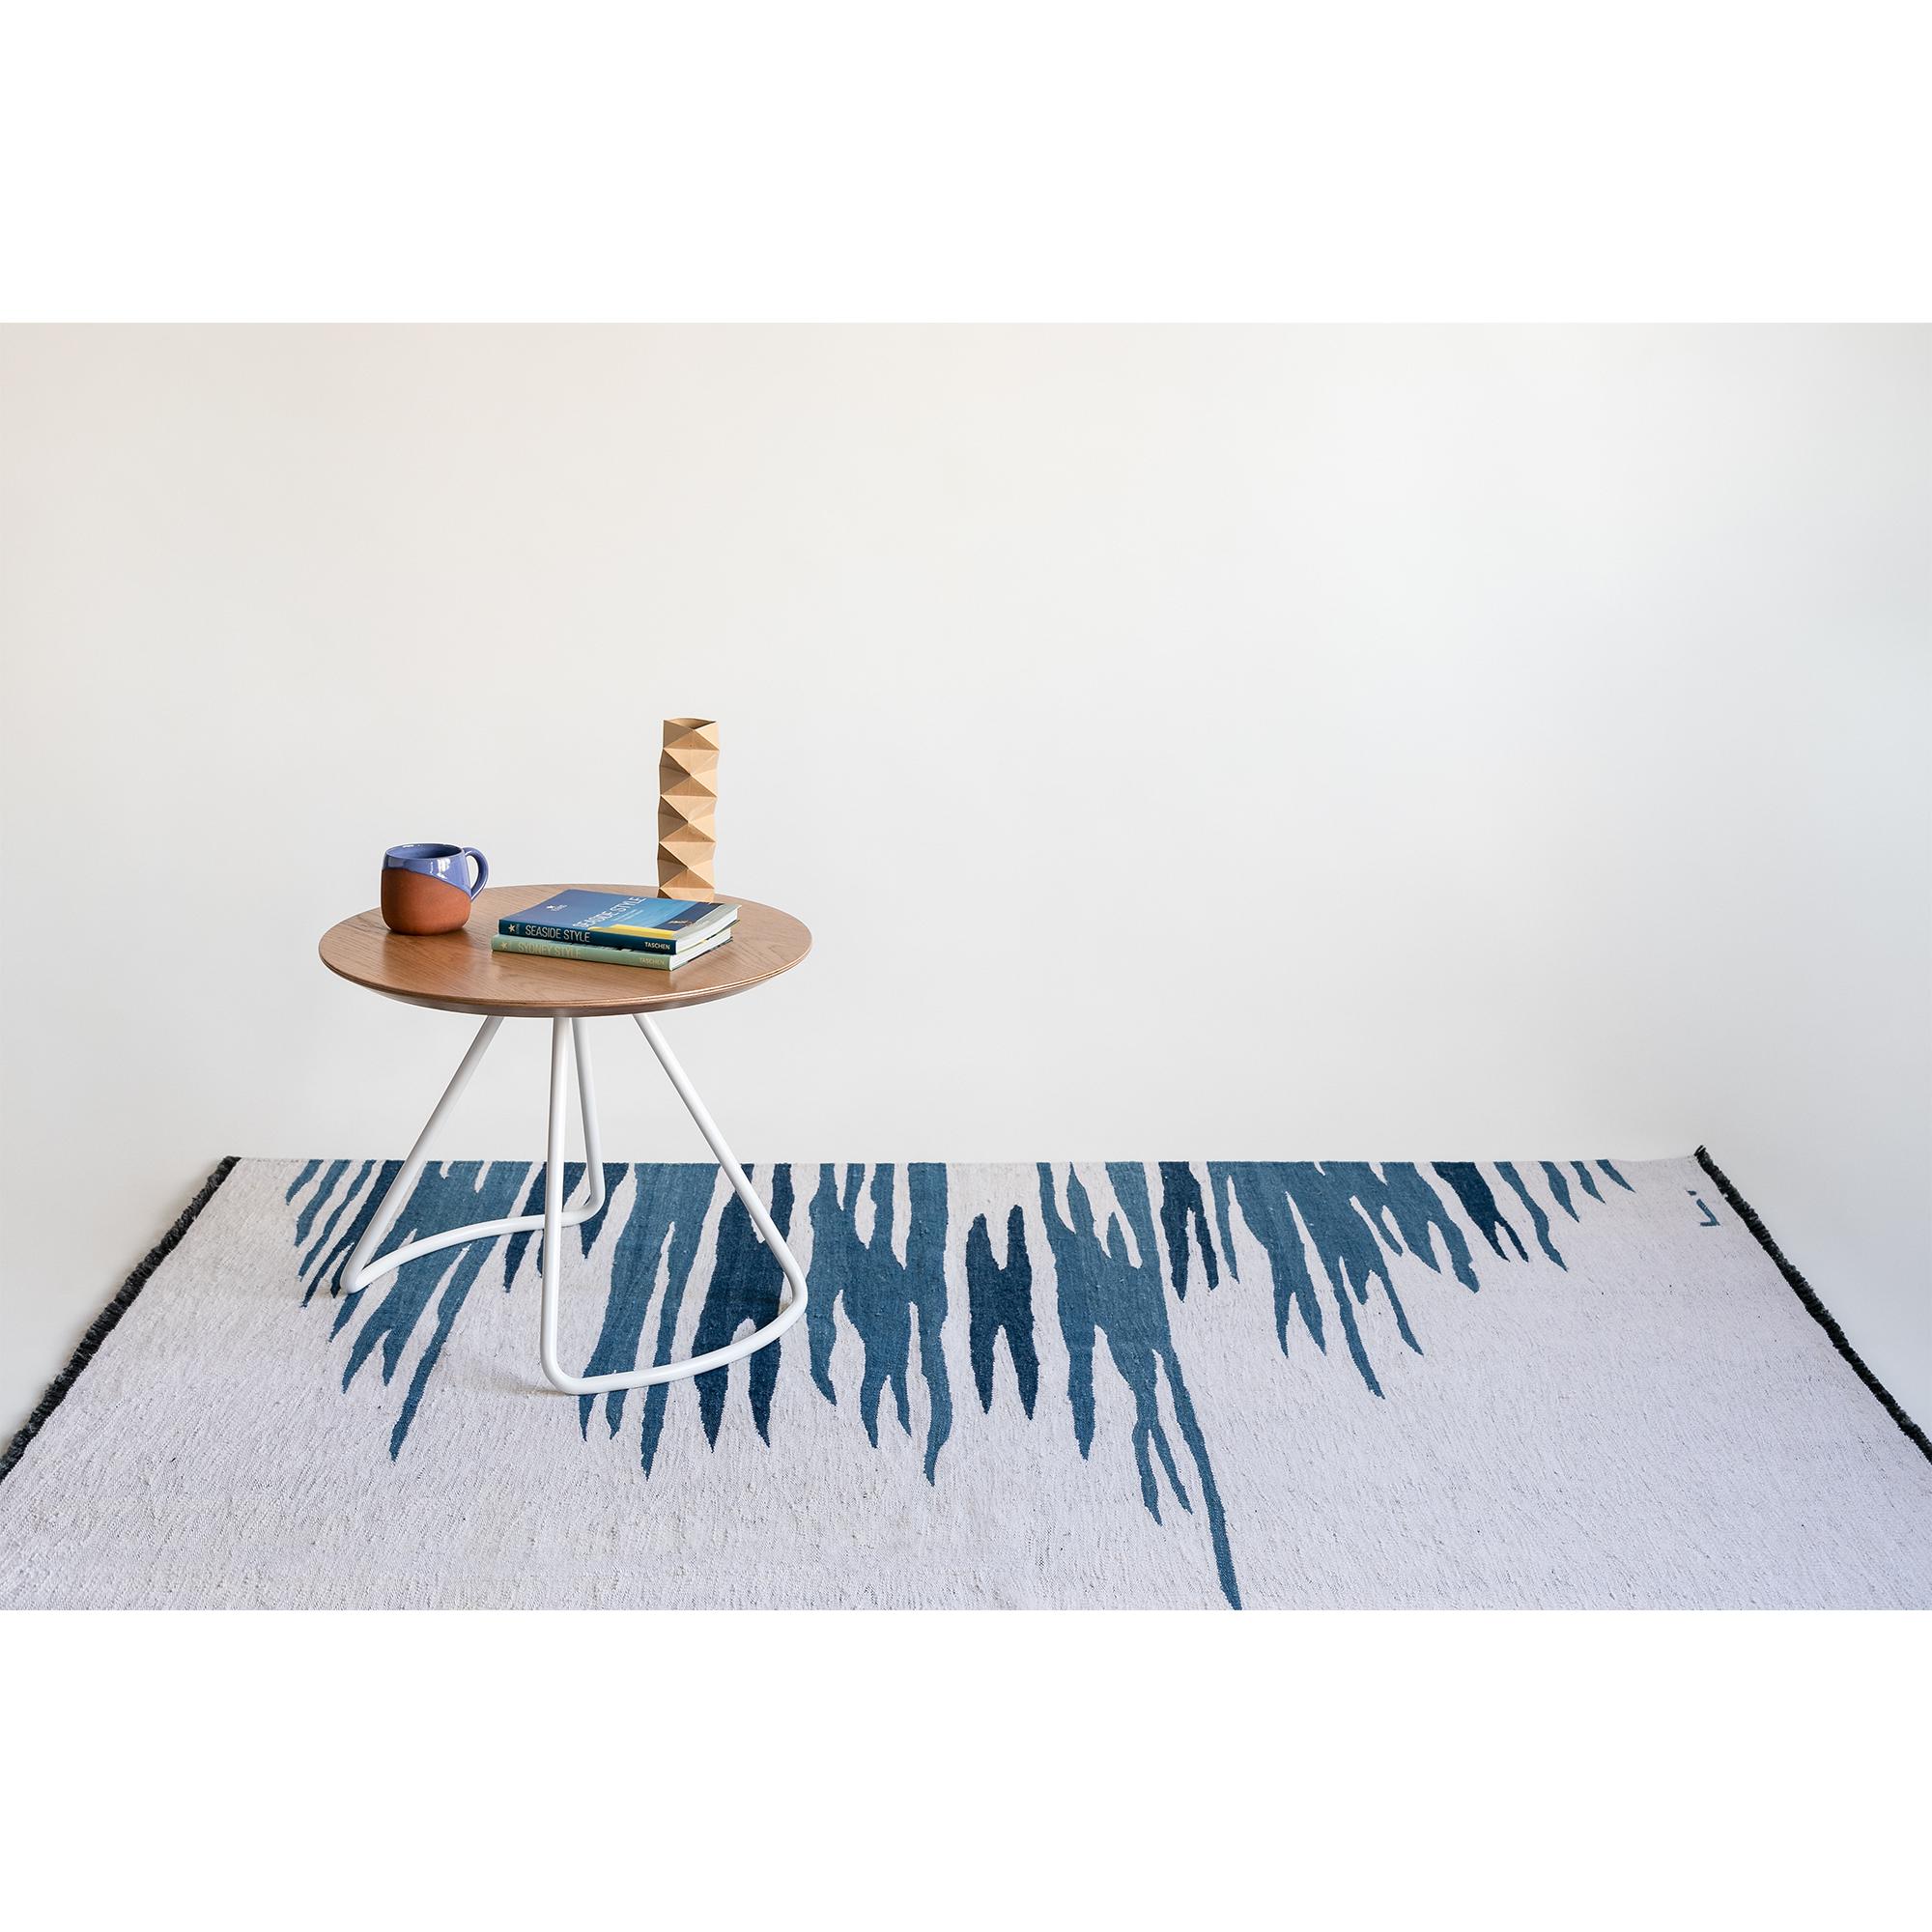 Le tapis kilim Ege No 2 fait partie d'une série de kilims qui reflètent une admiration pour l'expressivité visuelle et émotionnelle de la surface de la mer, avec ses mouvements fluides, et ses reflets de couleurs qui créent un effet relaxant sur la